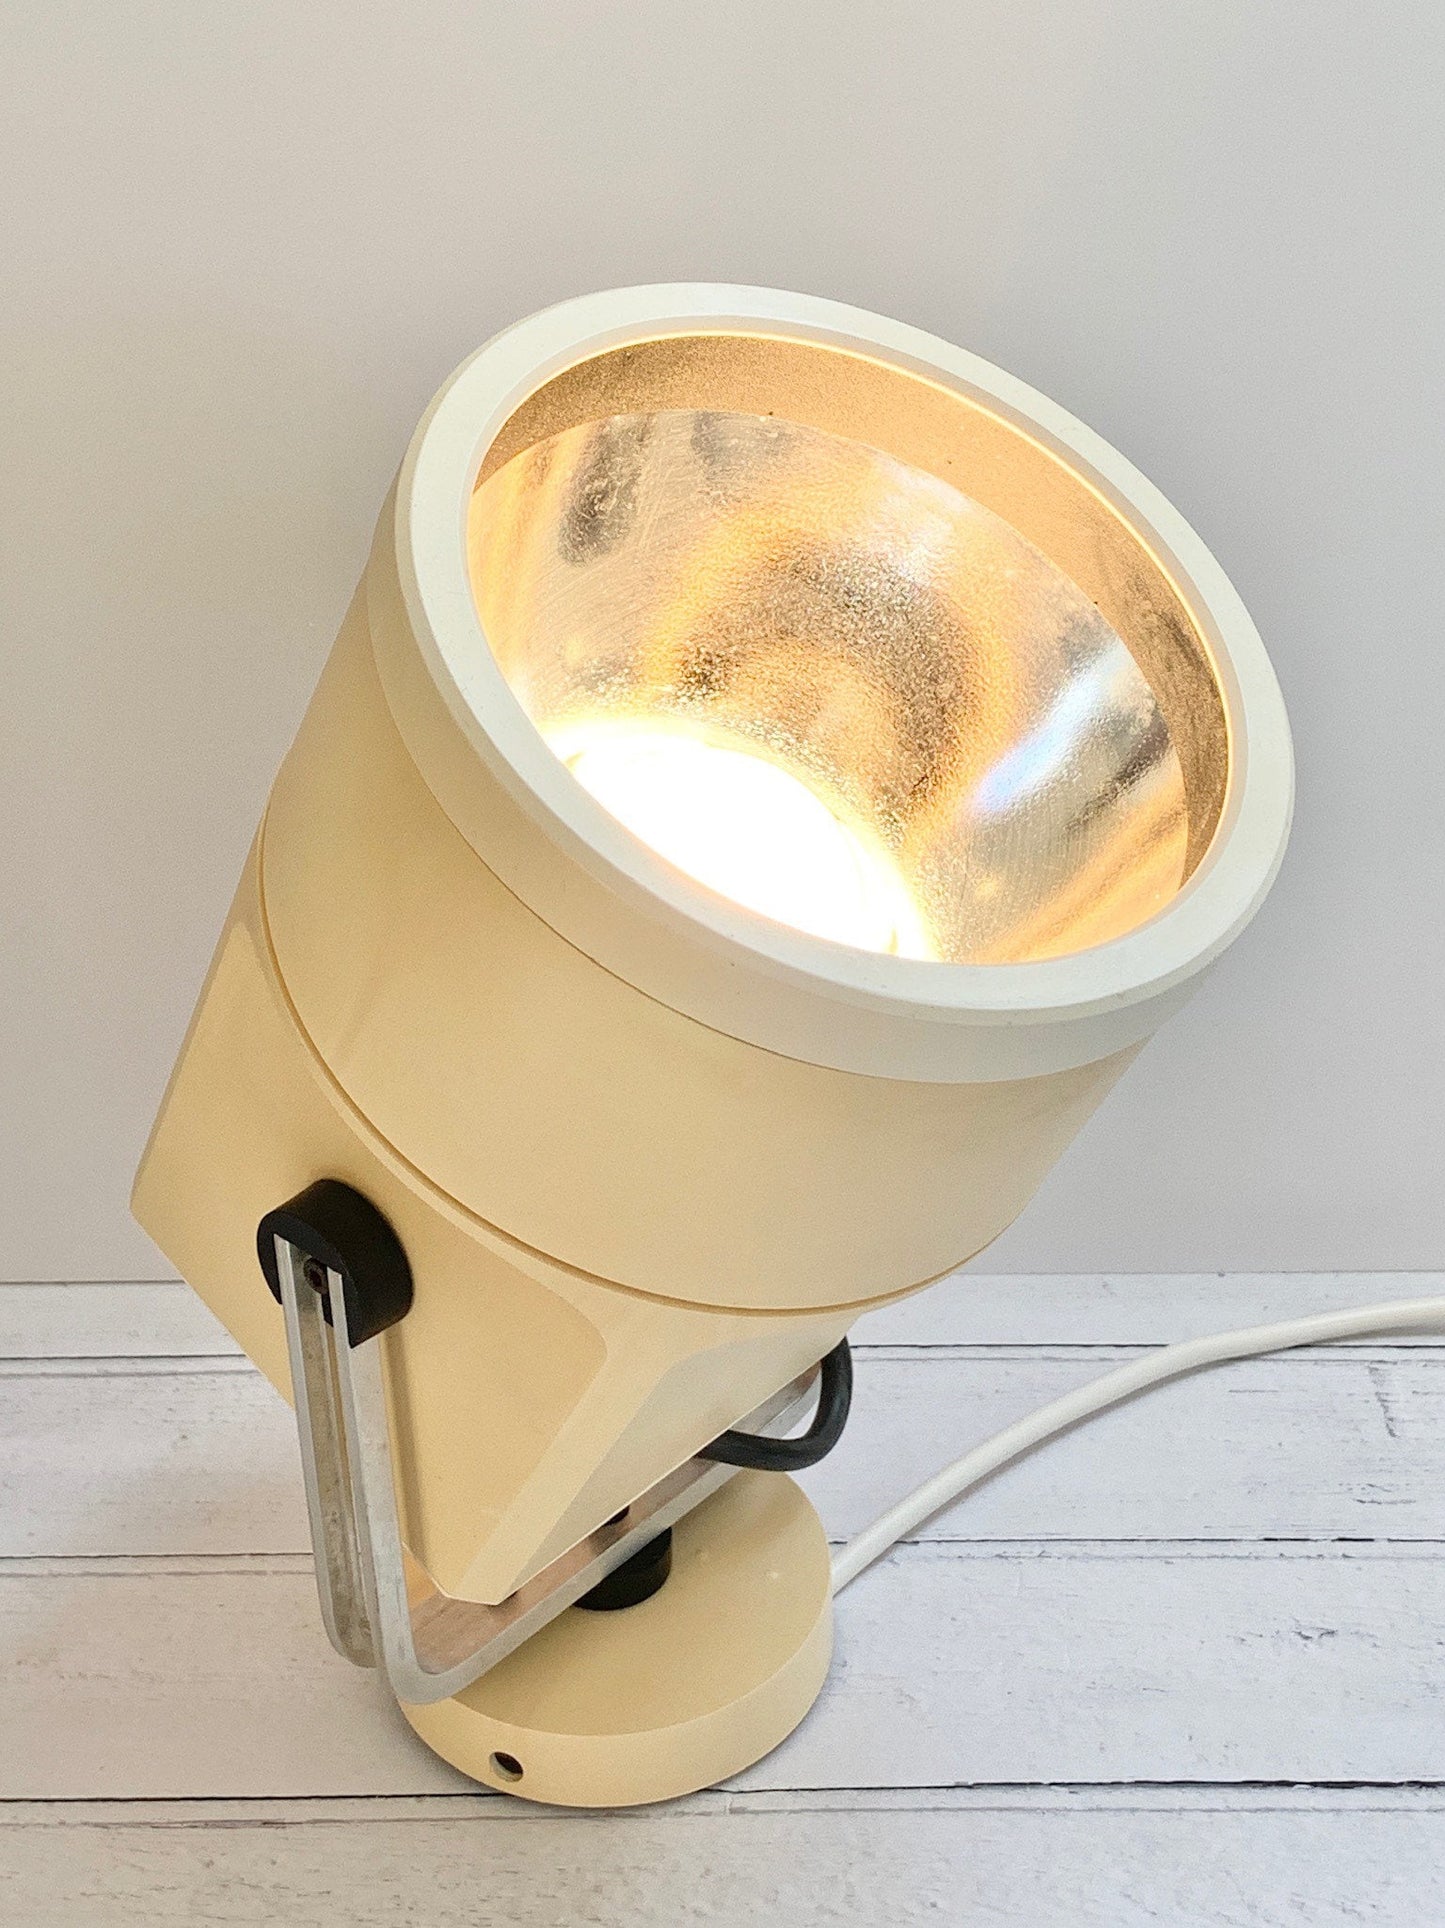 Louis Poulsen Danish Unispot Spotlight White Storebror Ceiling Wall Lamp Retro Light